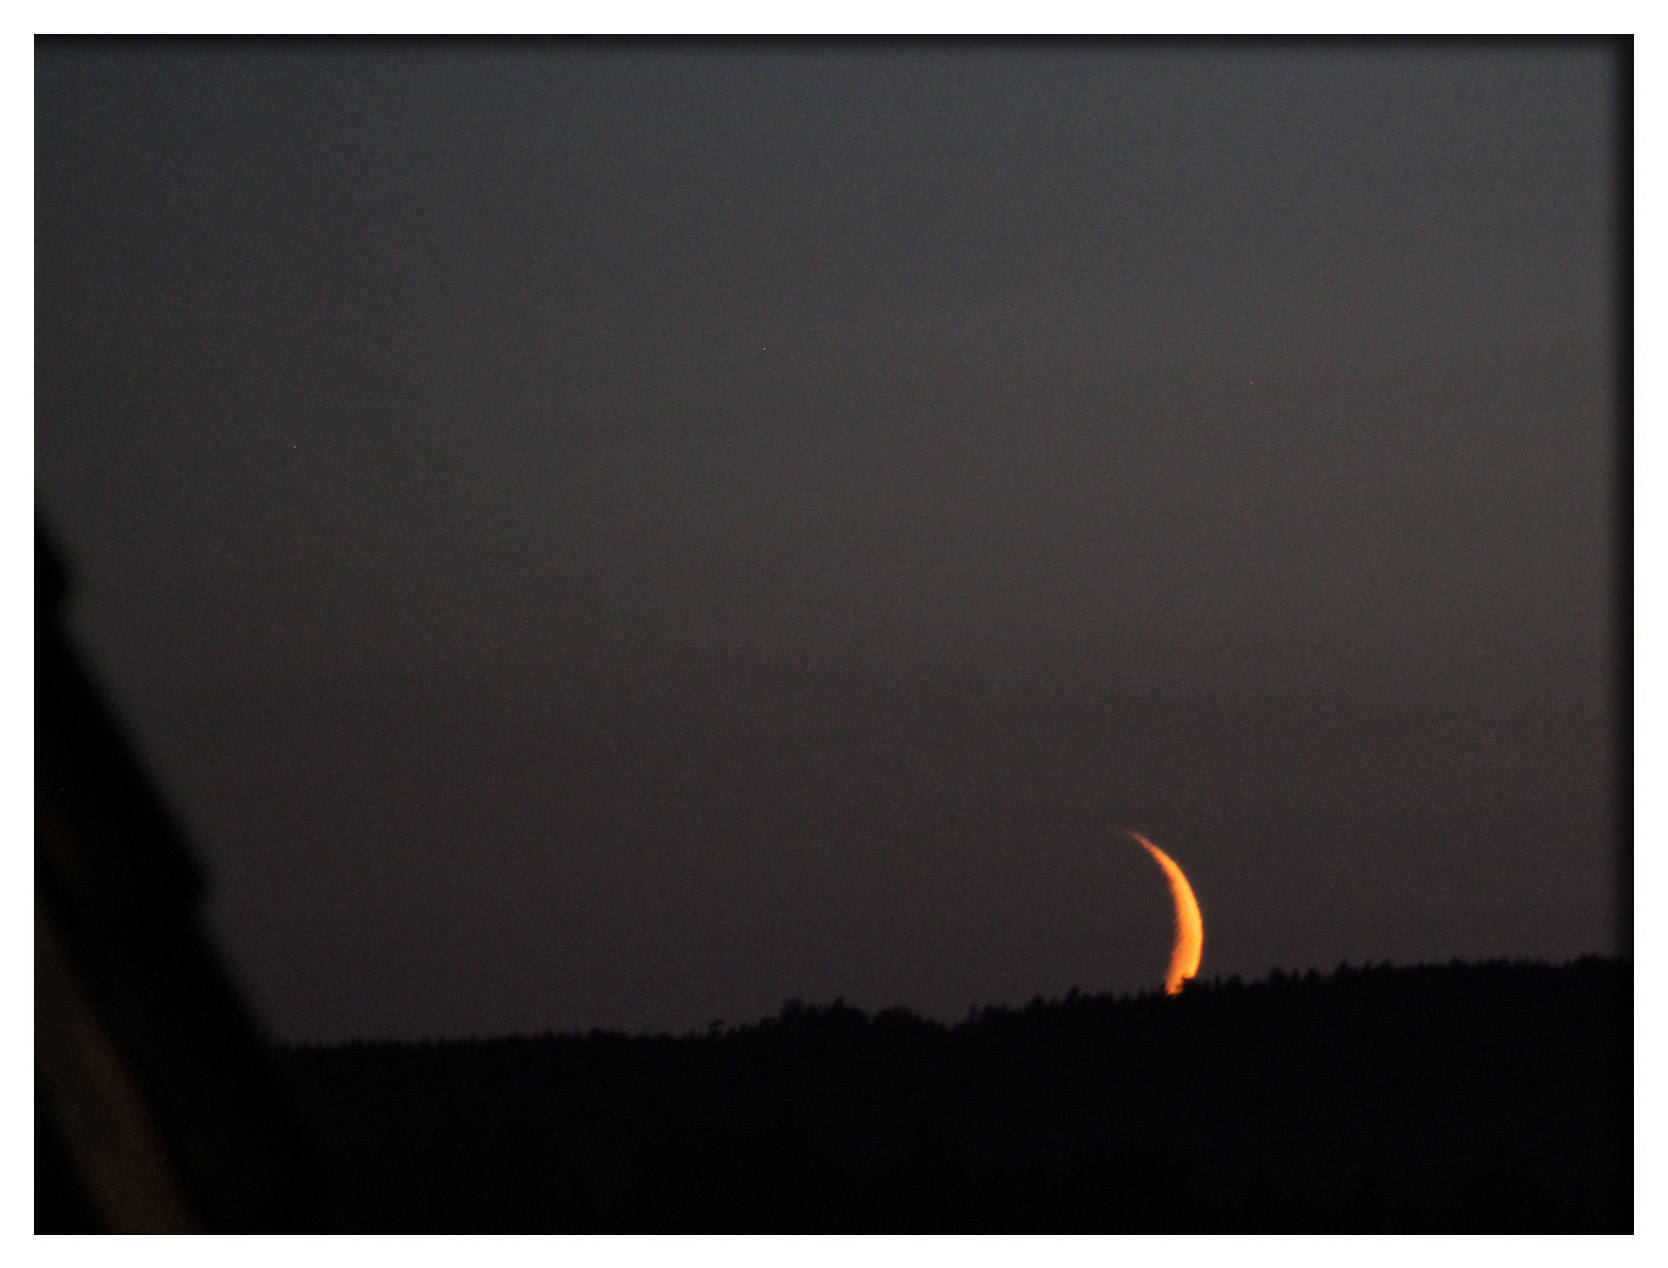 Mond, 22.06.12 - 22:50 Uhr